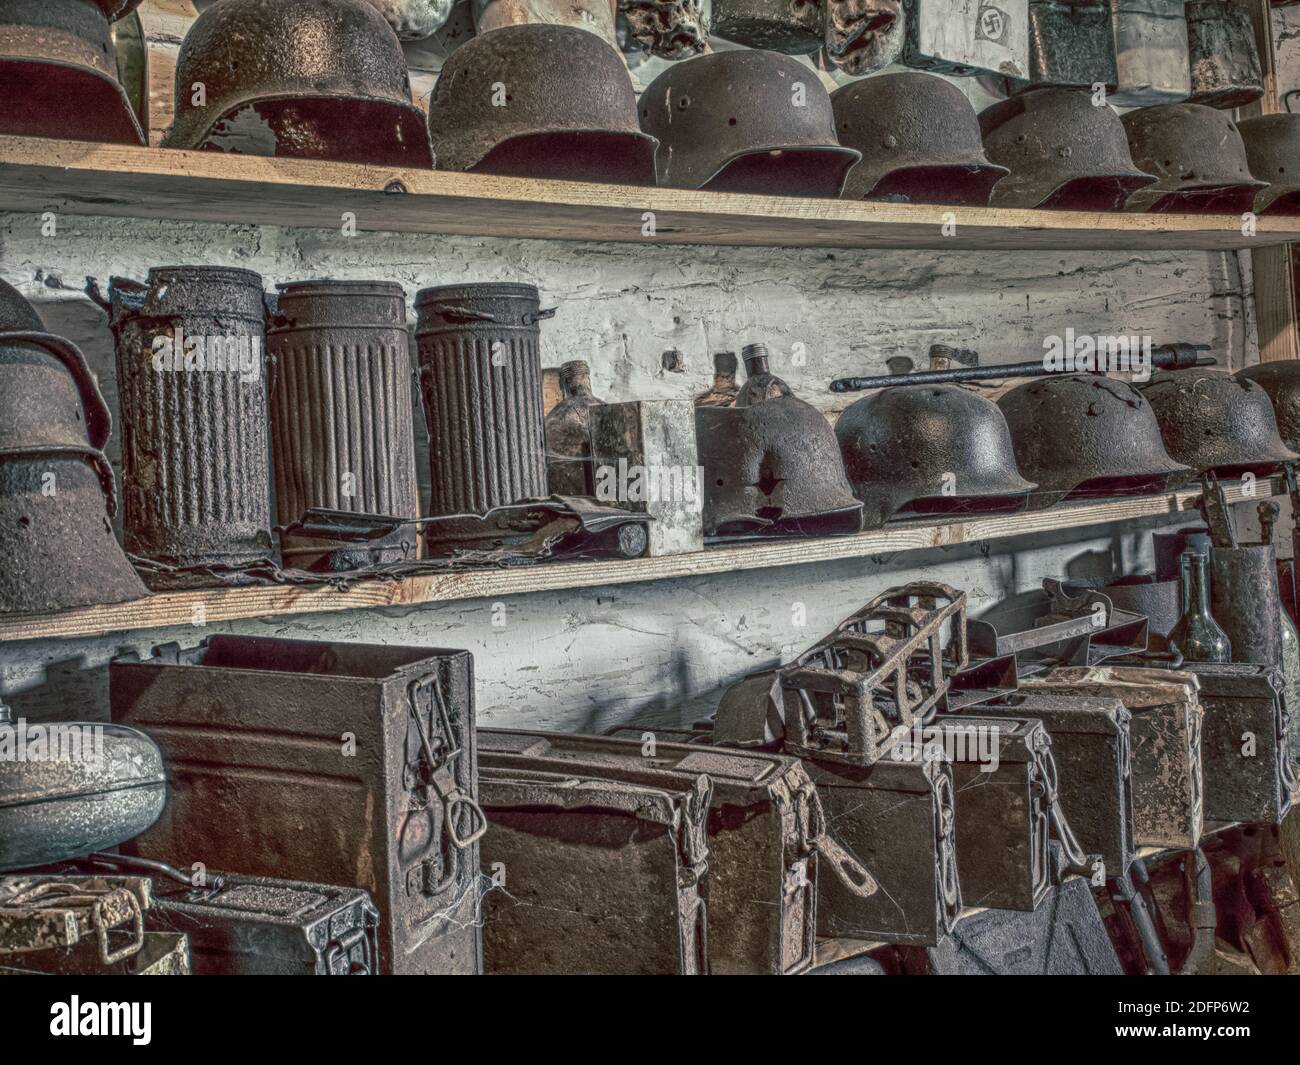 Zyndranowa, Pologne - 13 août 2017 : collection de casques, navires et autres accessoires de guerre anciens au musée de la culture Lemko. Photo vintage. Banque D'Images